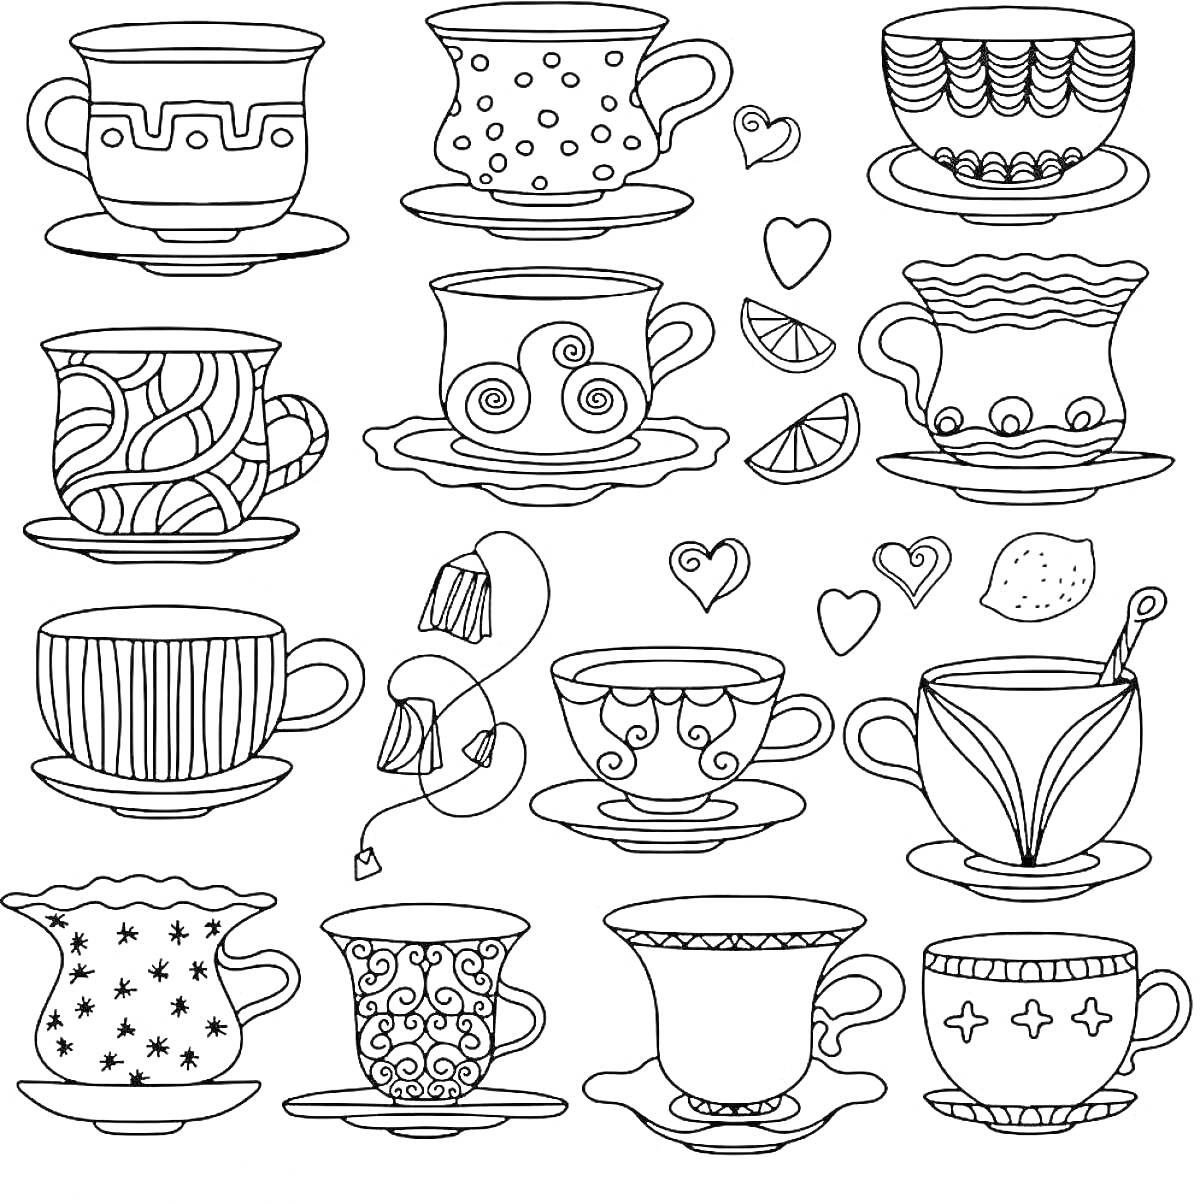 Набор чашек с различными узорами, сердечки, ломтики лимона, пакетик чая, заварочный чайник, кусочек сахара